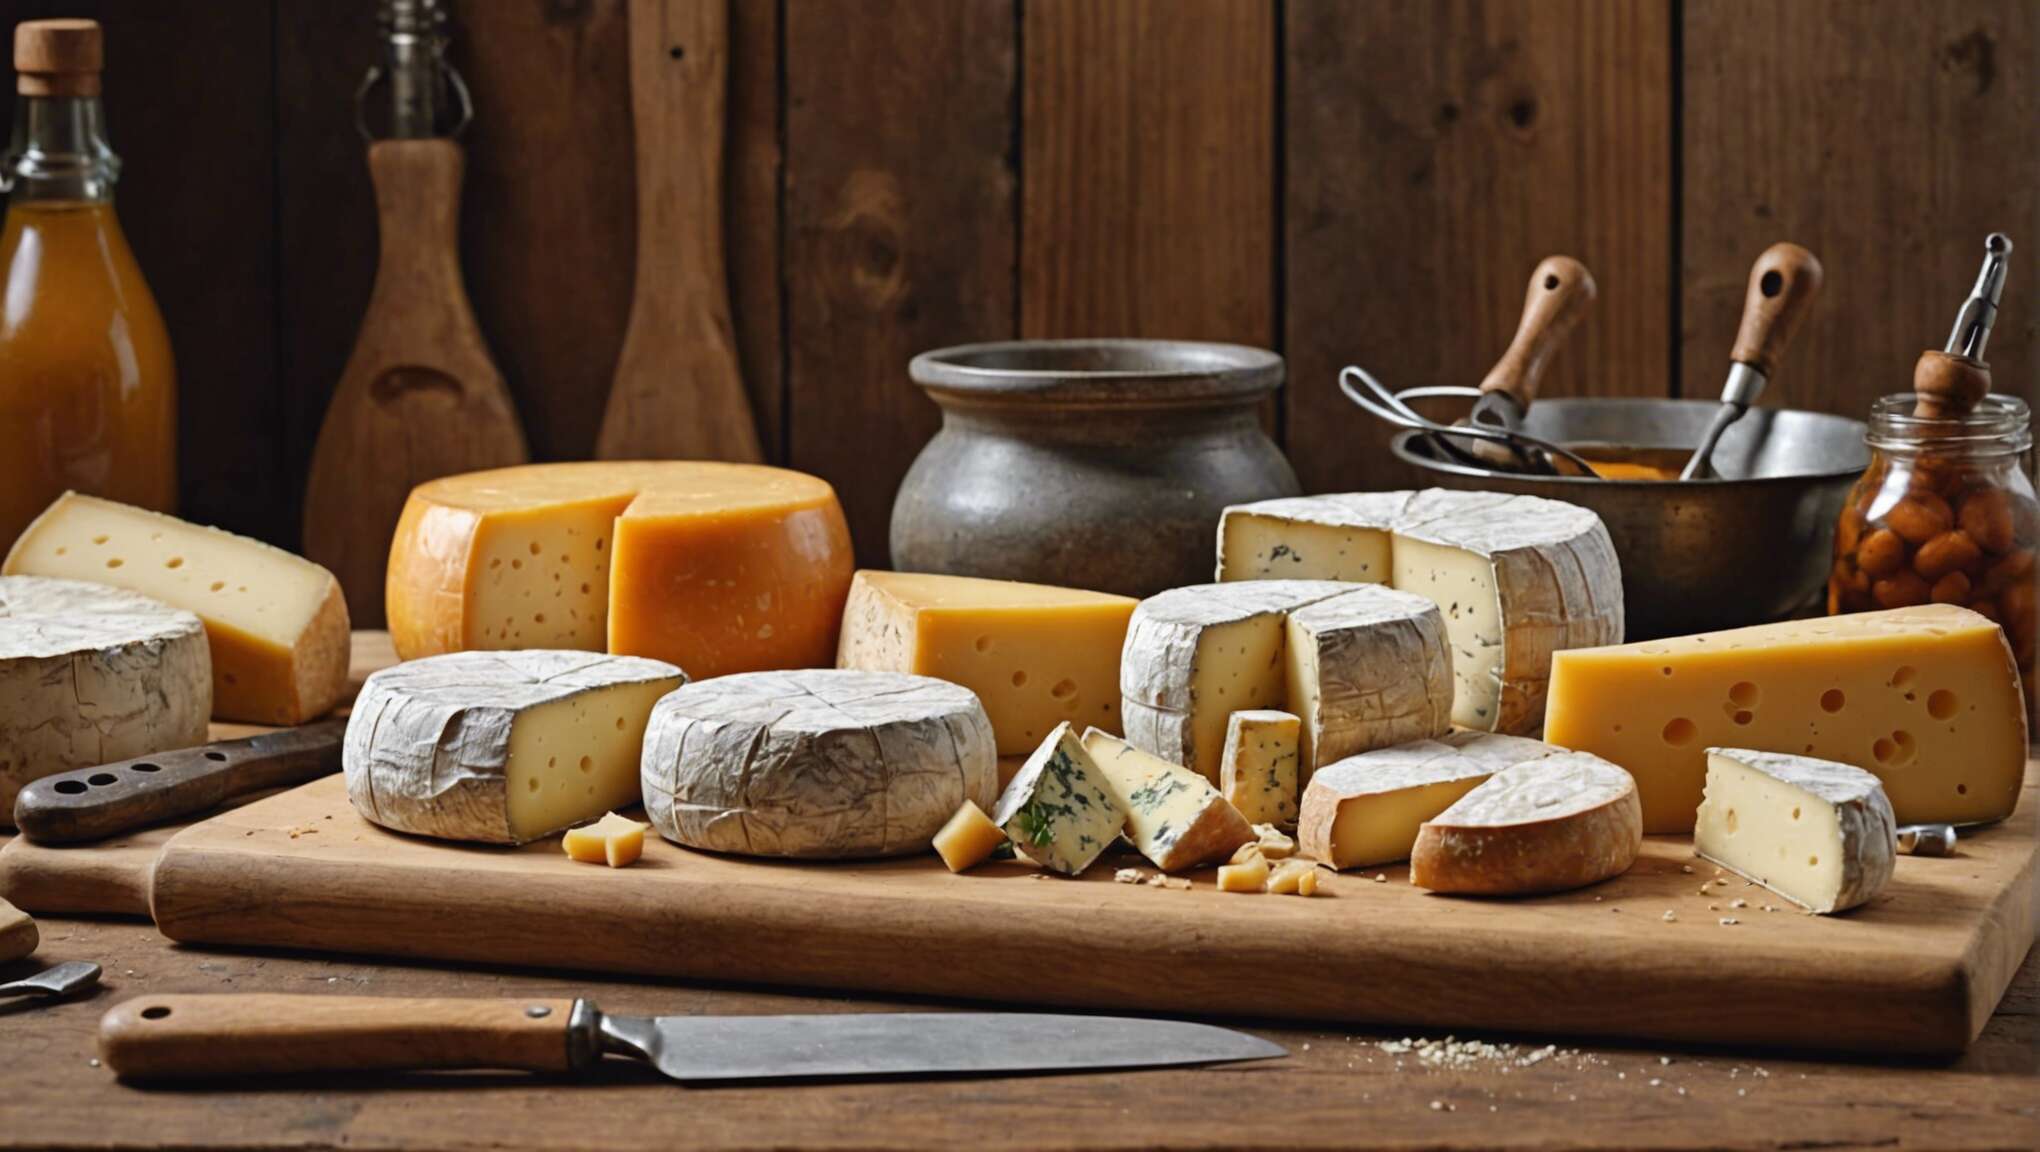 Conseils d'affinage à domicile pour amateurs de fromages